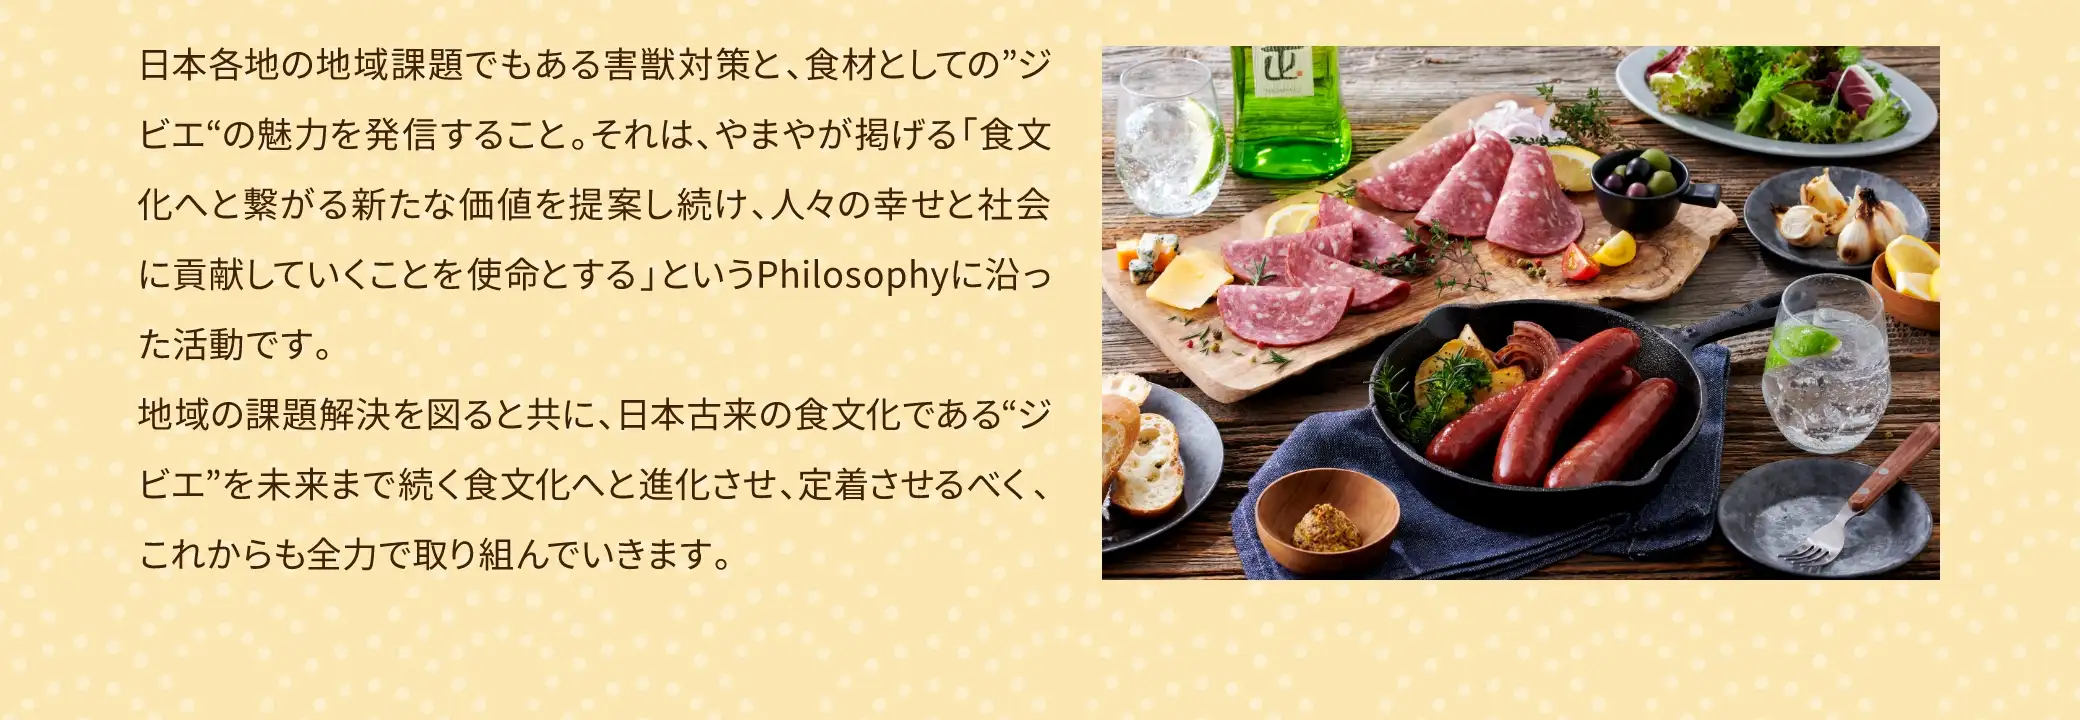 日本各地の地域課題でもある害獣対策と、食材としての「ジビエ」の魅力を発信すること。それは、やまやが掲げる「食文化へと繋がる新たな価値を提案し続け、人々の幸せと社会に貢献していくことを使命とする」というPhilosophyに沿った活動です。地域の課題解決を図ると共に、日本古来の食文化である「ジビエ」を未来まで続く食文化へと進化させ、定着させるべく、これからも全力で取り組んでいきます。